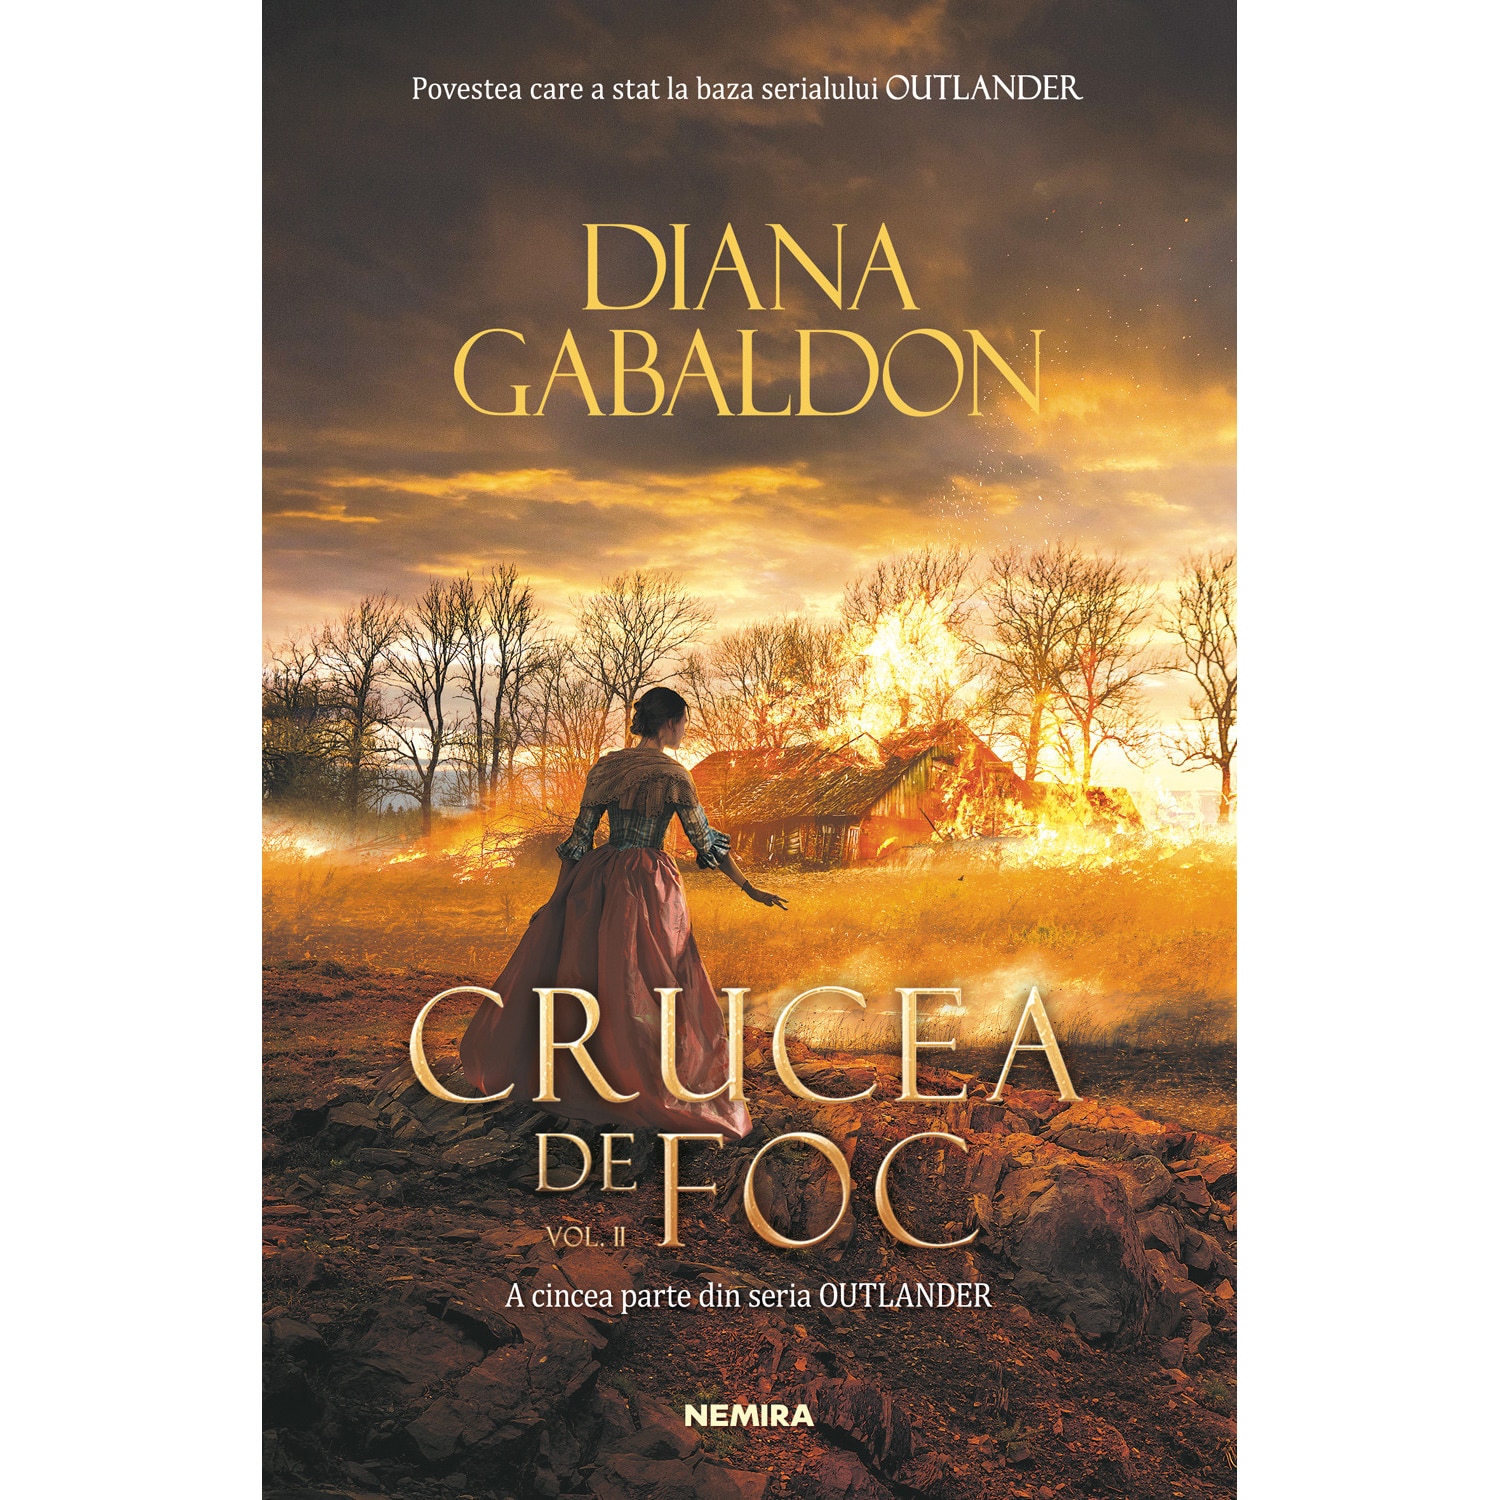 fox pizza did it Crucea de foc - Diana Gabaldon vol. 2, Seria Outlander, partea a V-a -  eMAG.ro